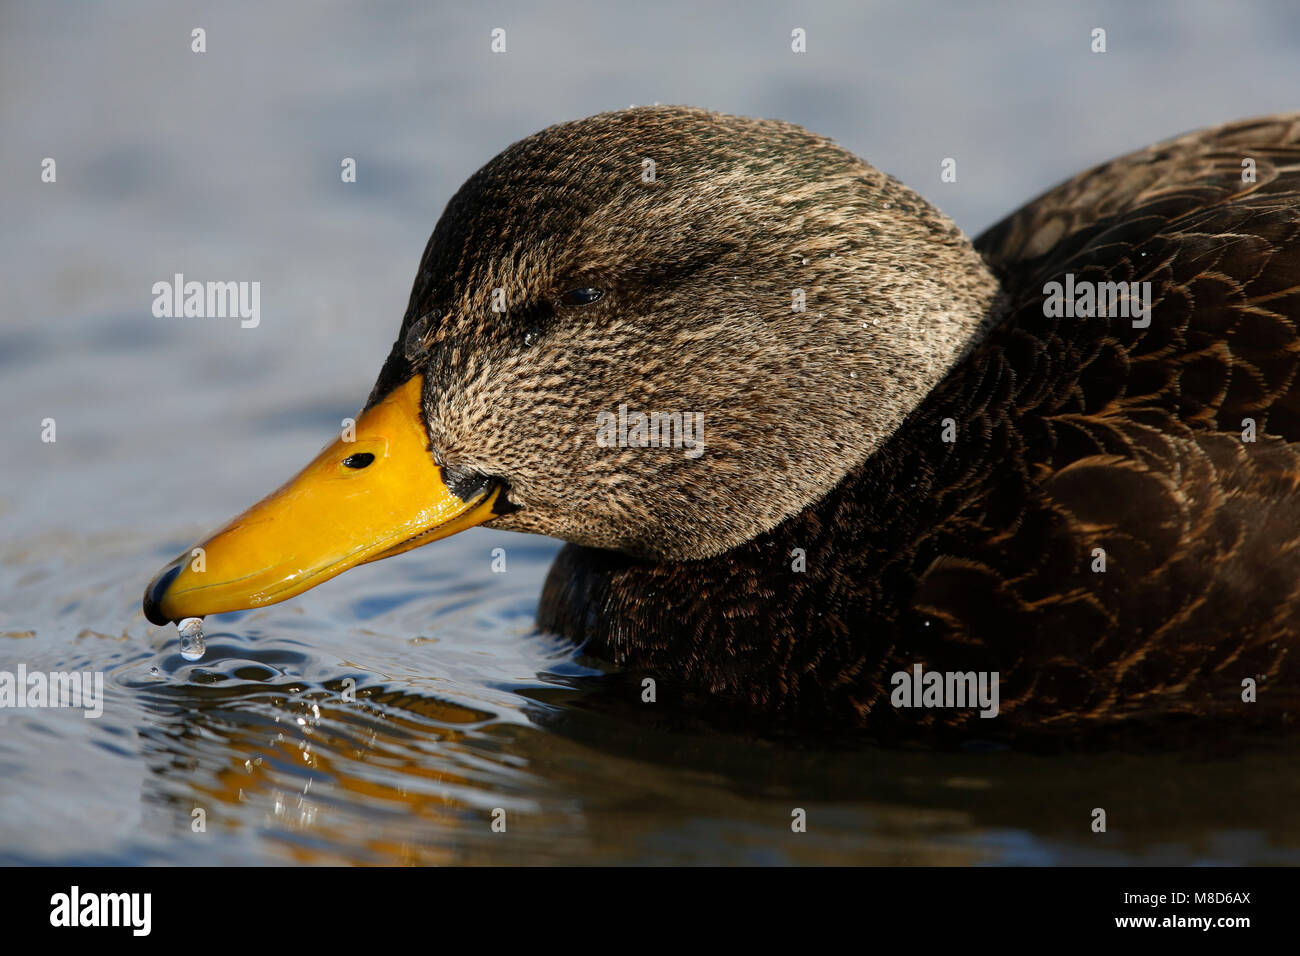 Amerikaanse Zwarte Eend tijdens de winter; American Black Duck (Anas rubripes) during winter Stock Photo